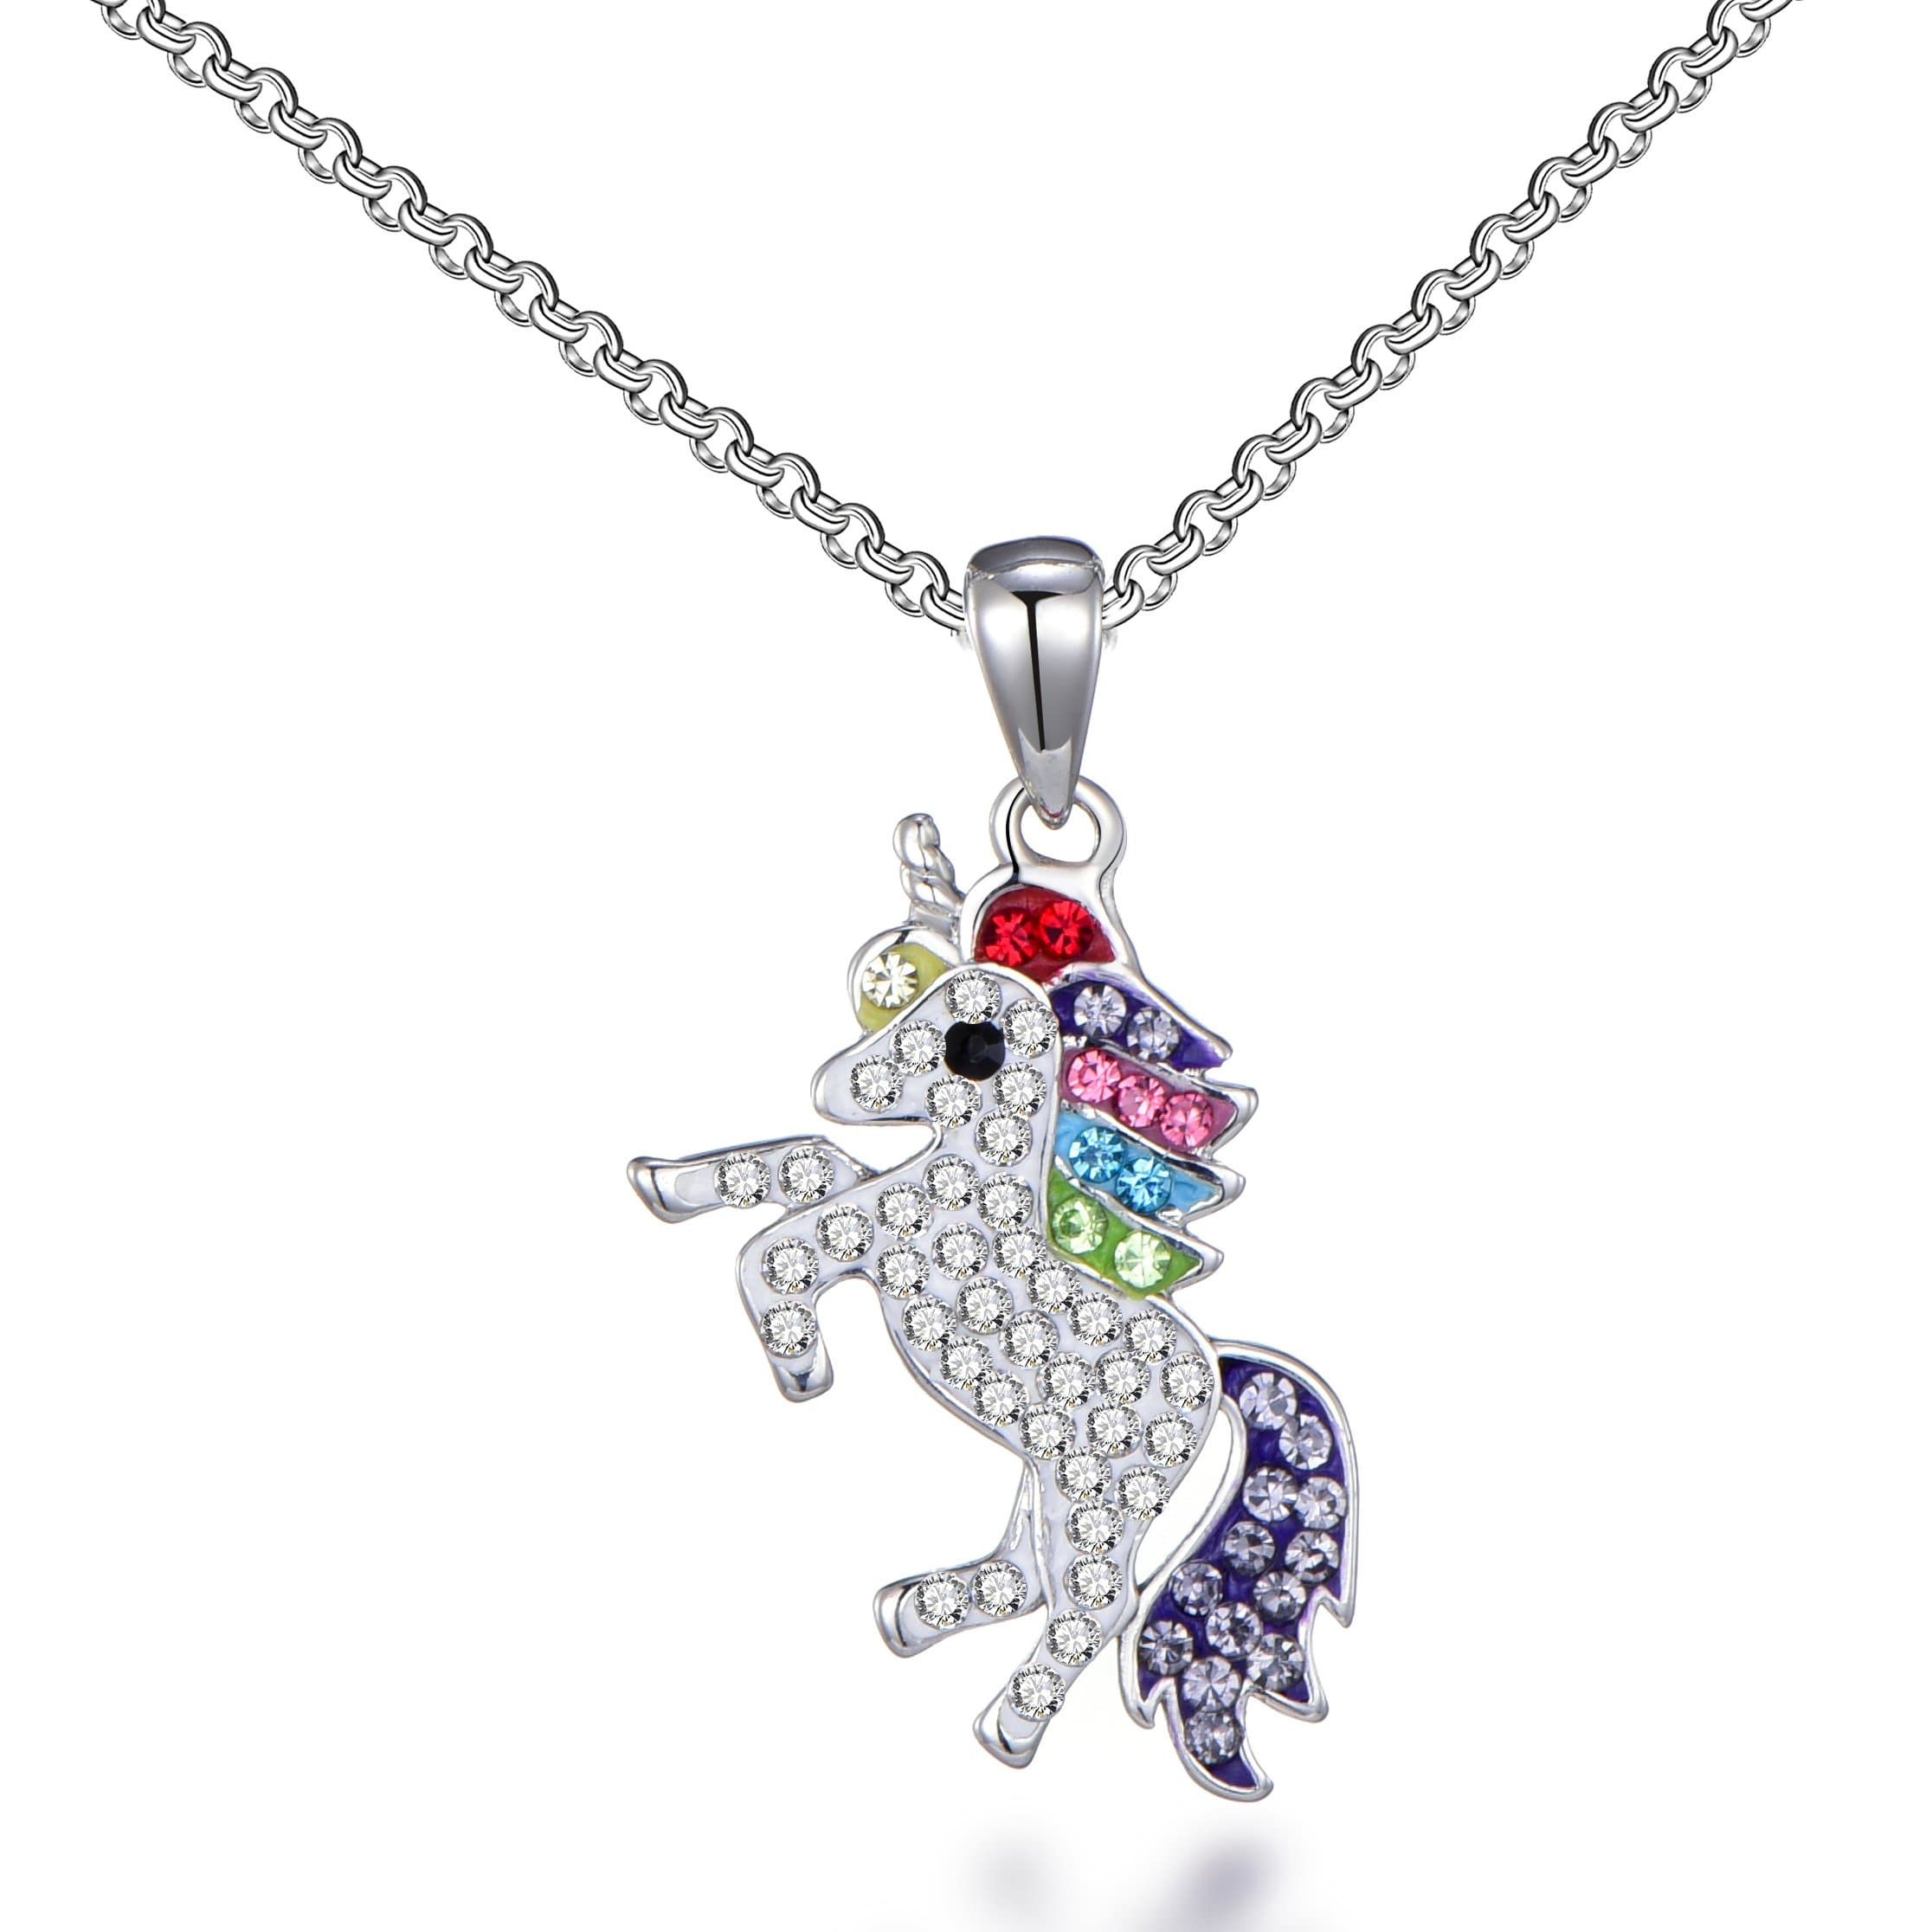 Unicorn Necklace with Zircondia® Crystals by Philip Jones Jewellery